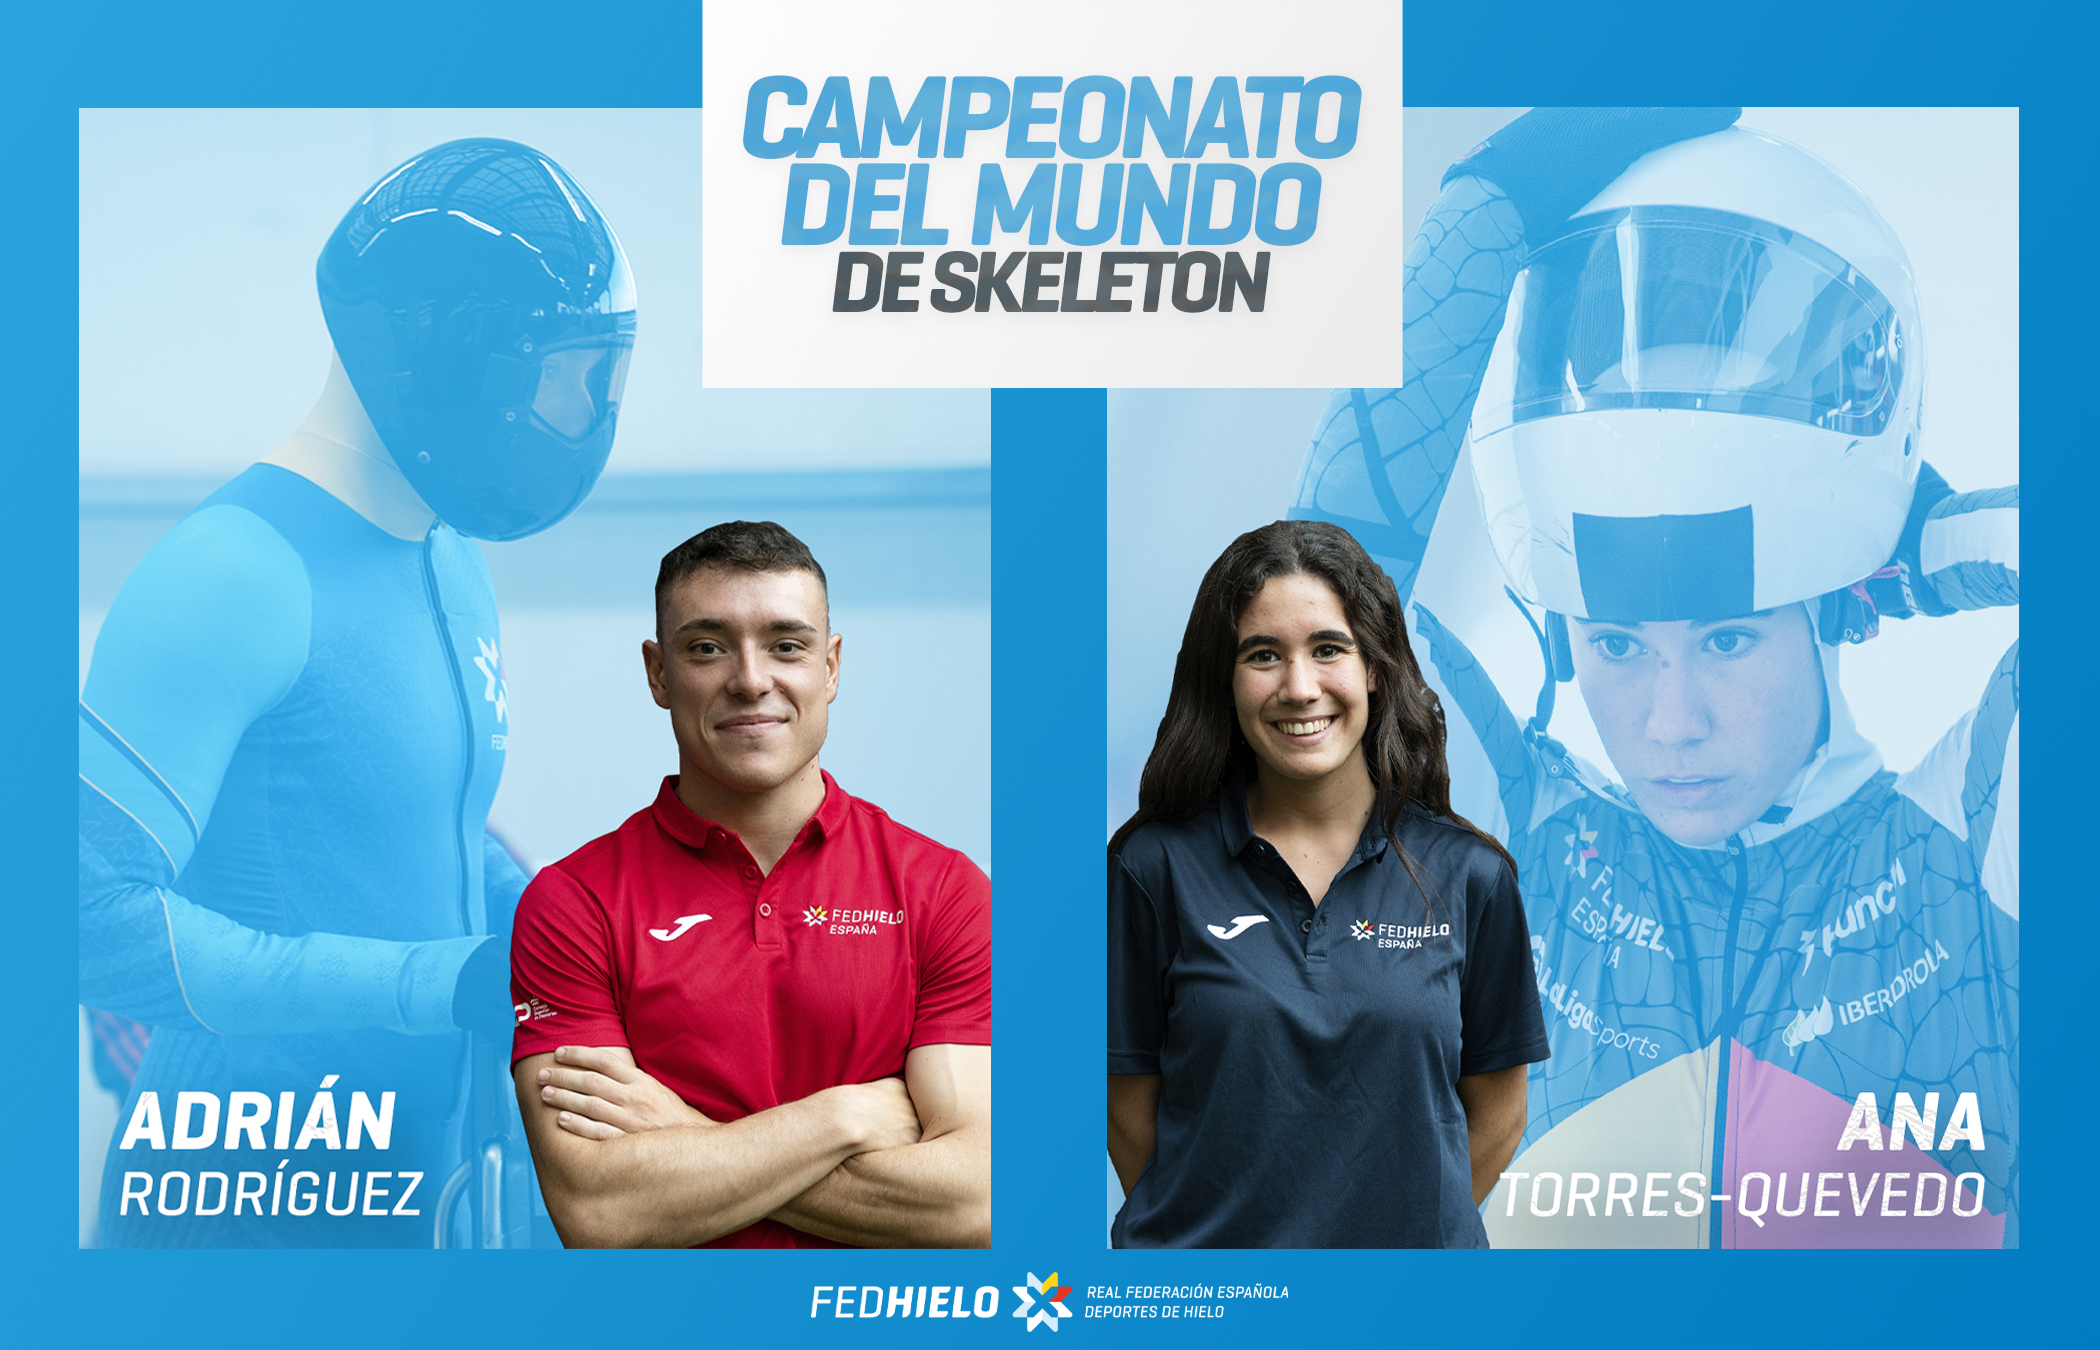 , Ana Torres-Quevedo y Adrián Rodríguez logran una histórica clasificación al Mundial de Skeleton, Real Federación Española Deportes de Hielo